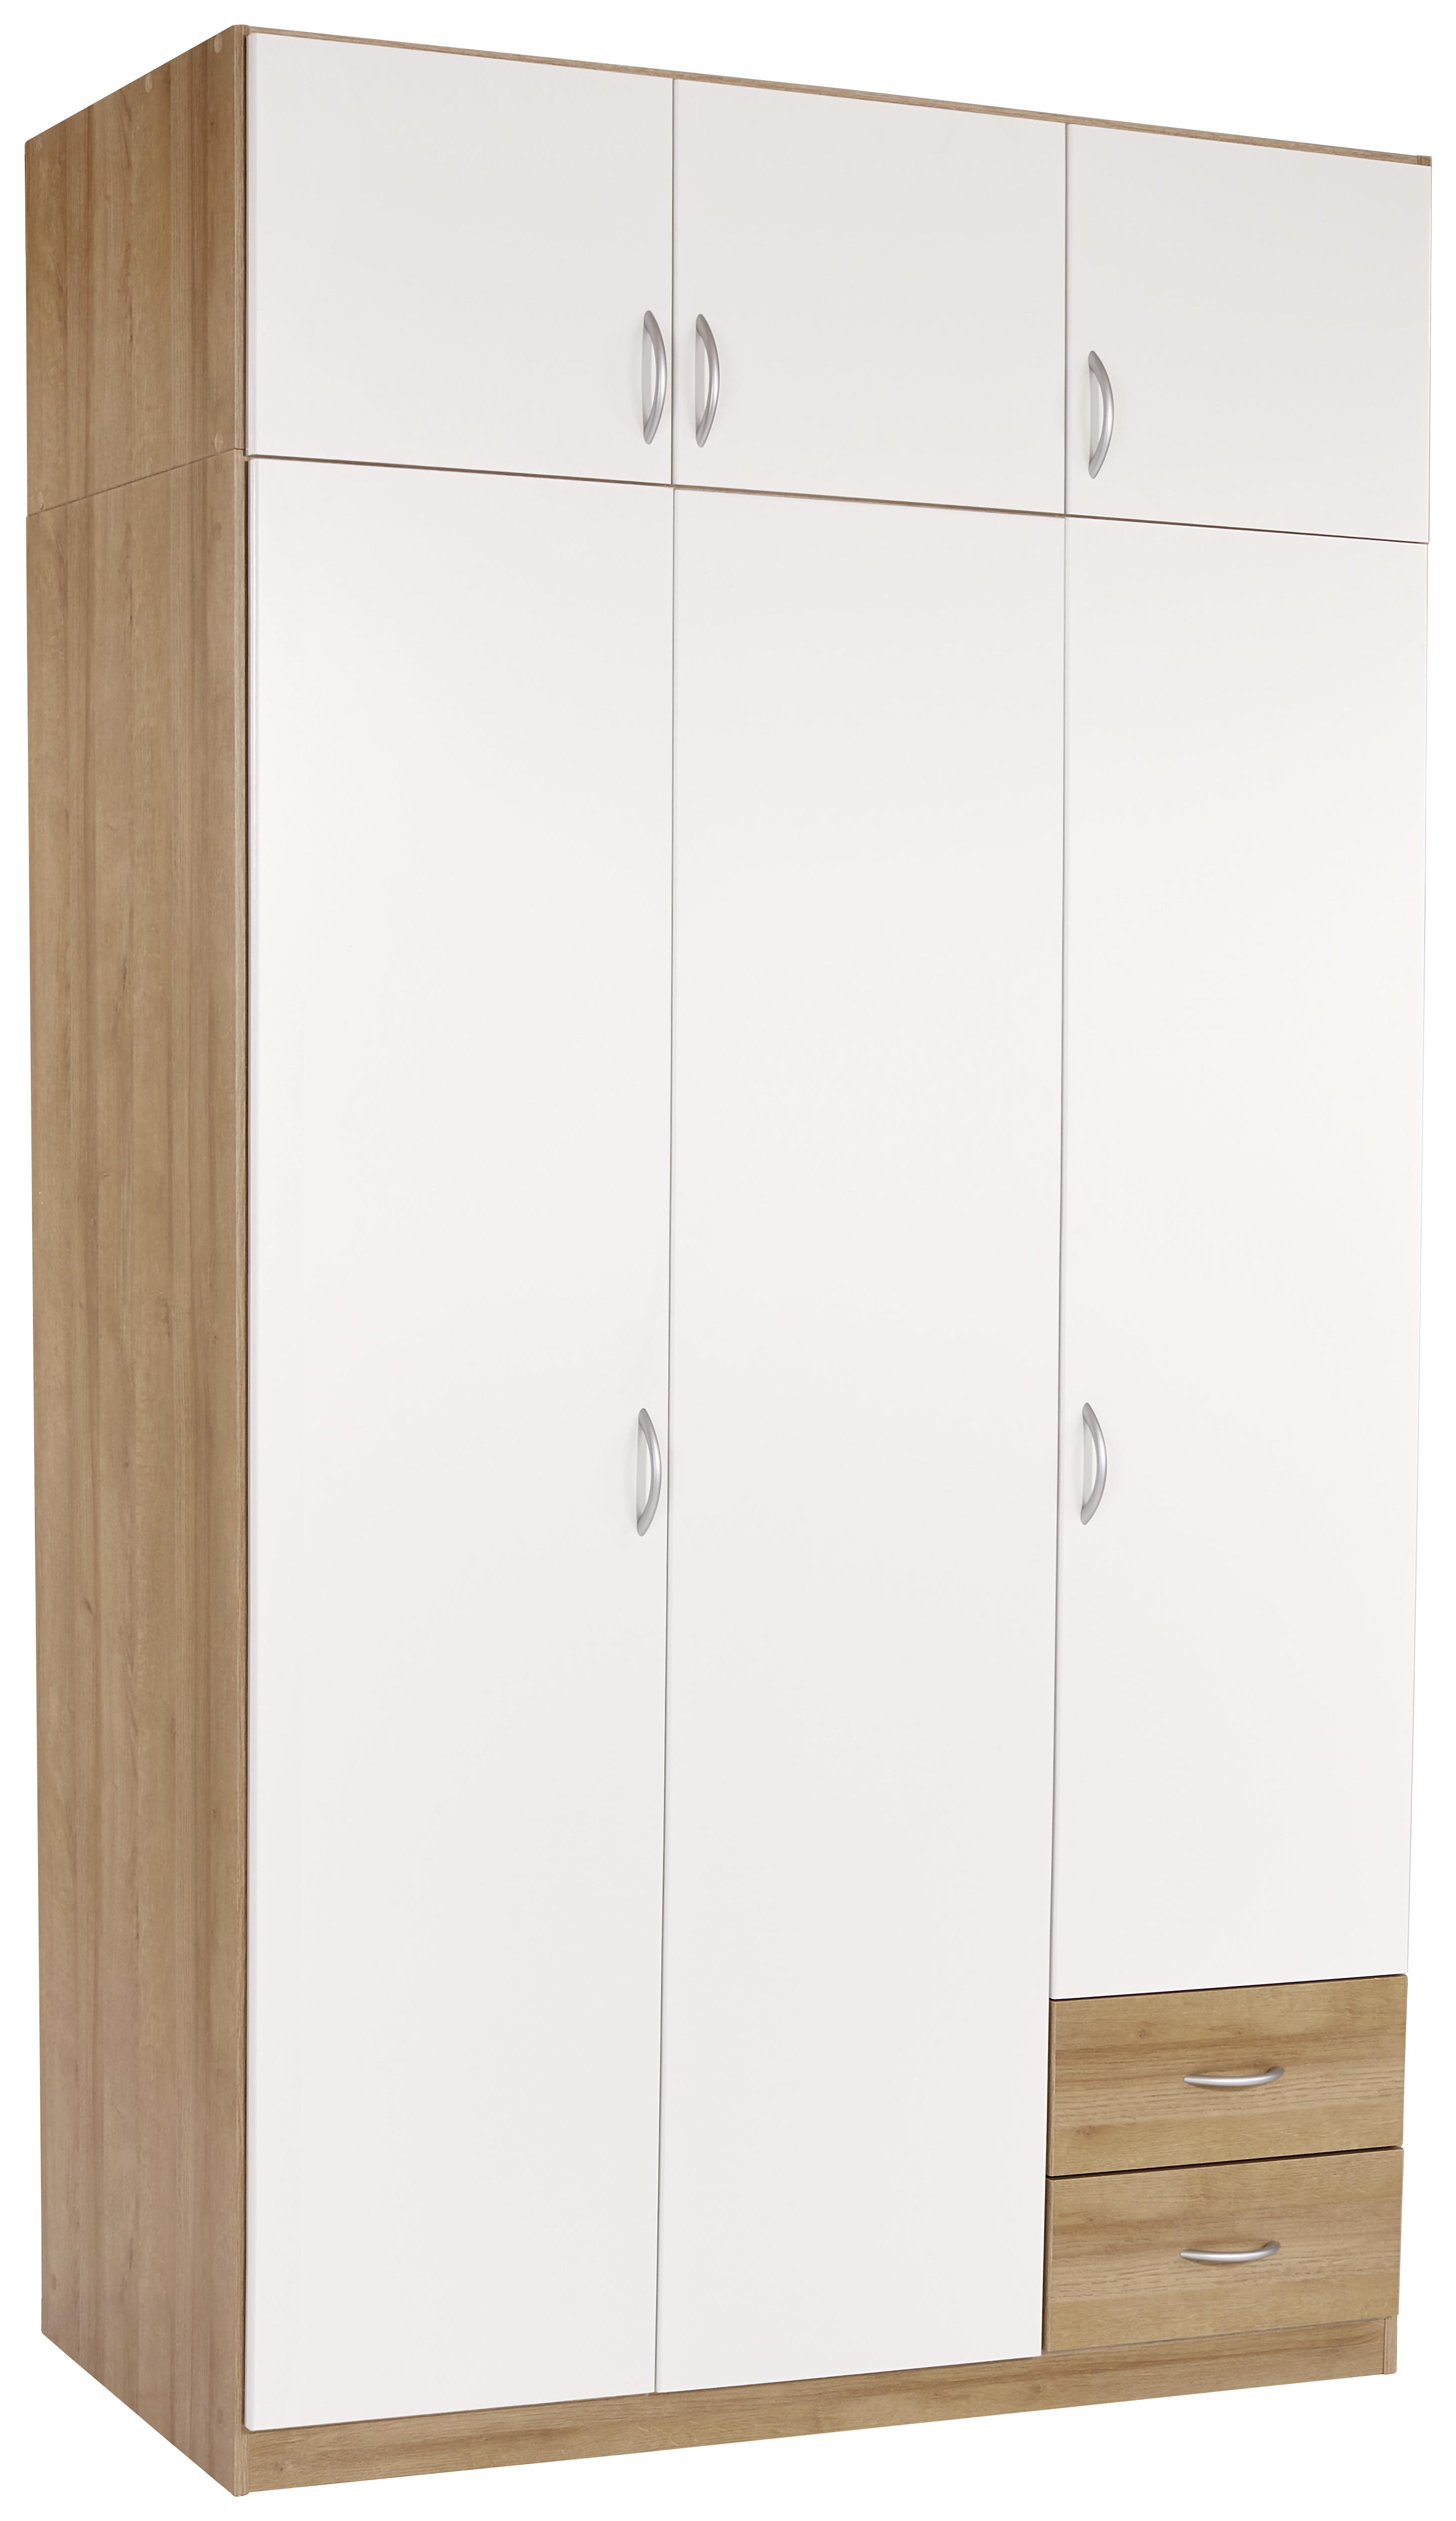 Dulap auxiliar superior Karo-extra - alb/culoare lemn stejar, Konventionell, material pe bază de lemn (136/39/54cm)